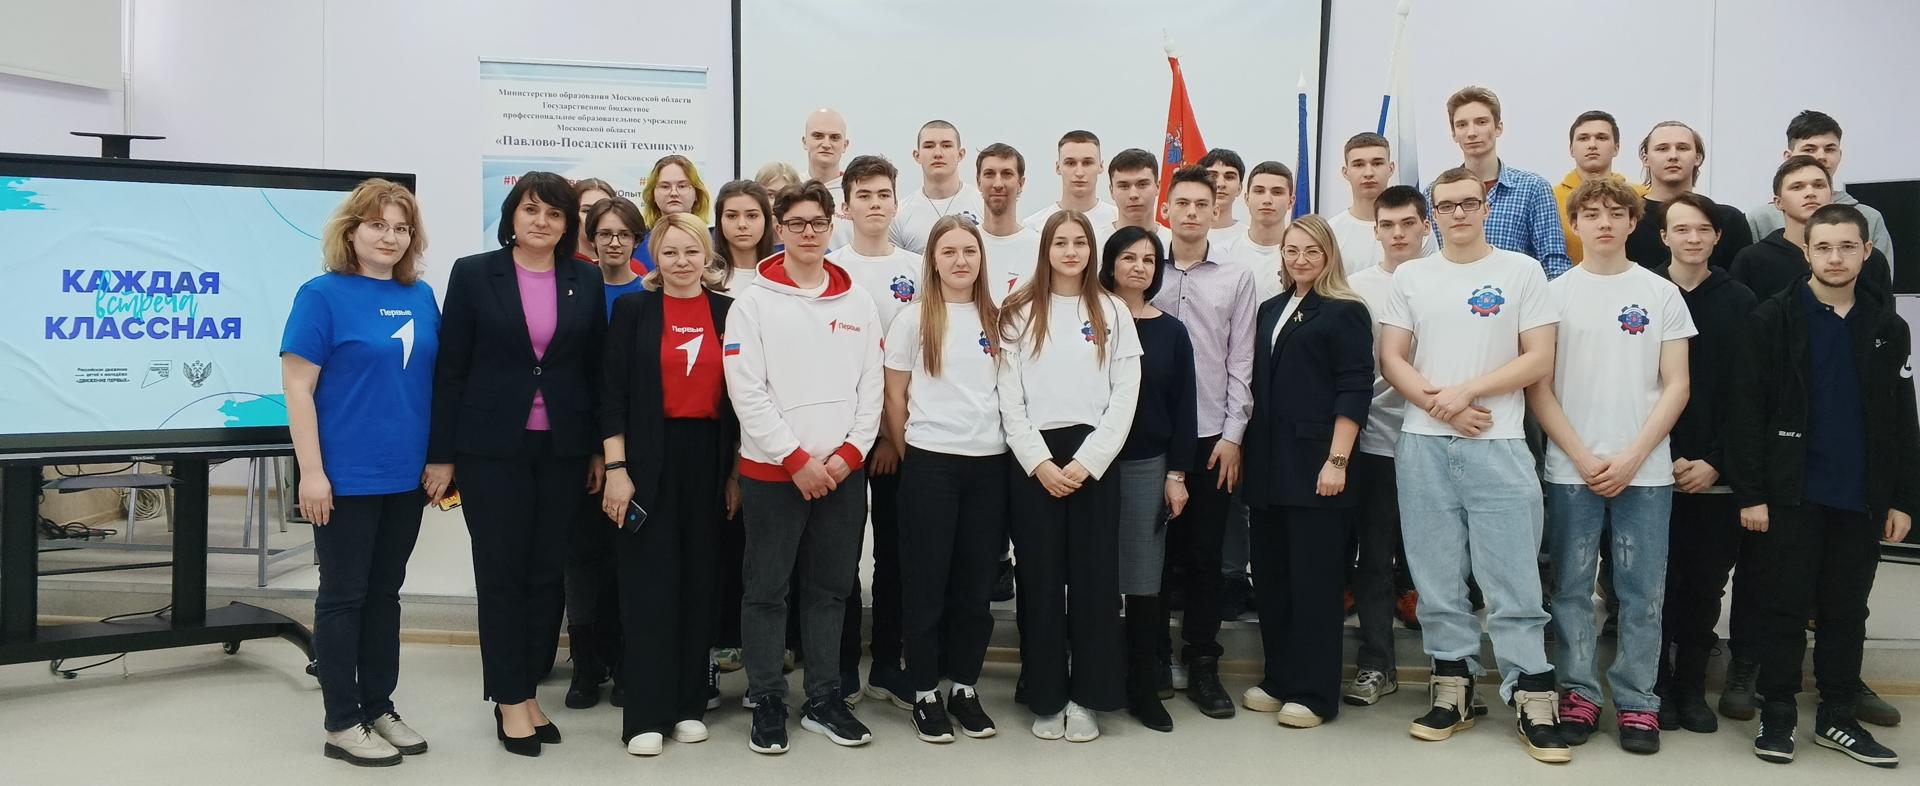 Студенты обсудили с депутатом Мособлдумы будущее Павловского Посада и ограничения в интернете